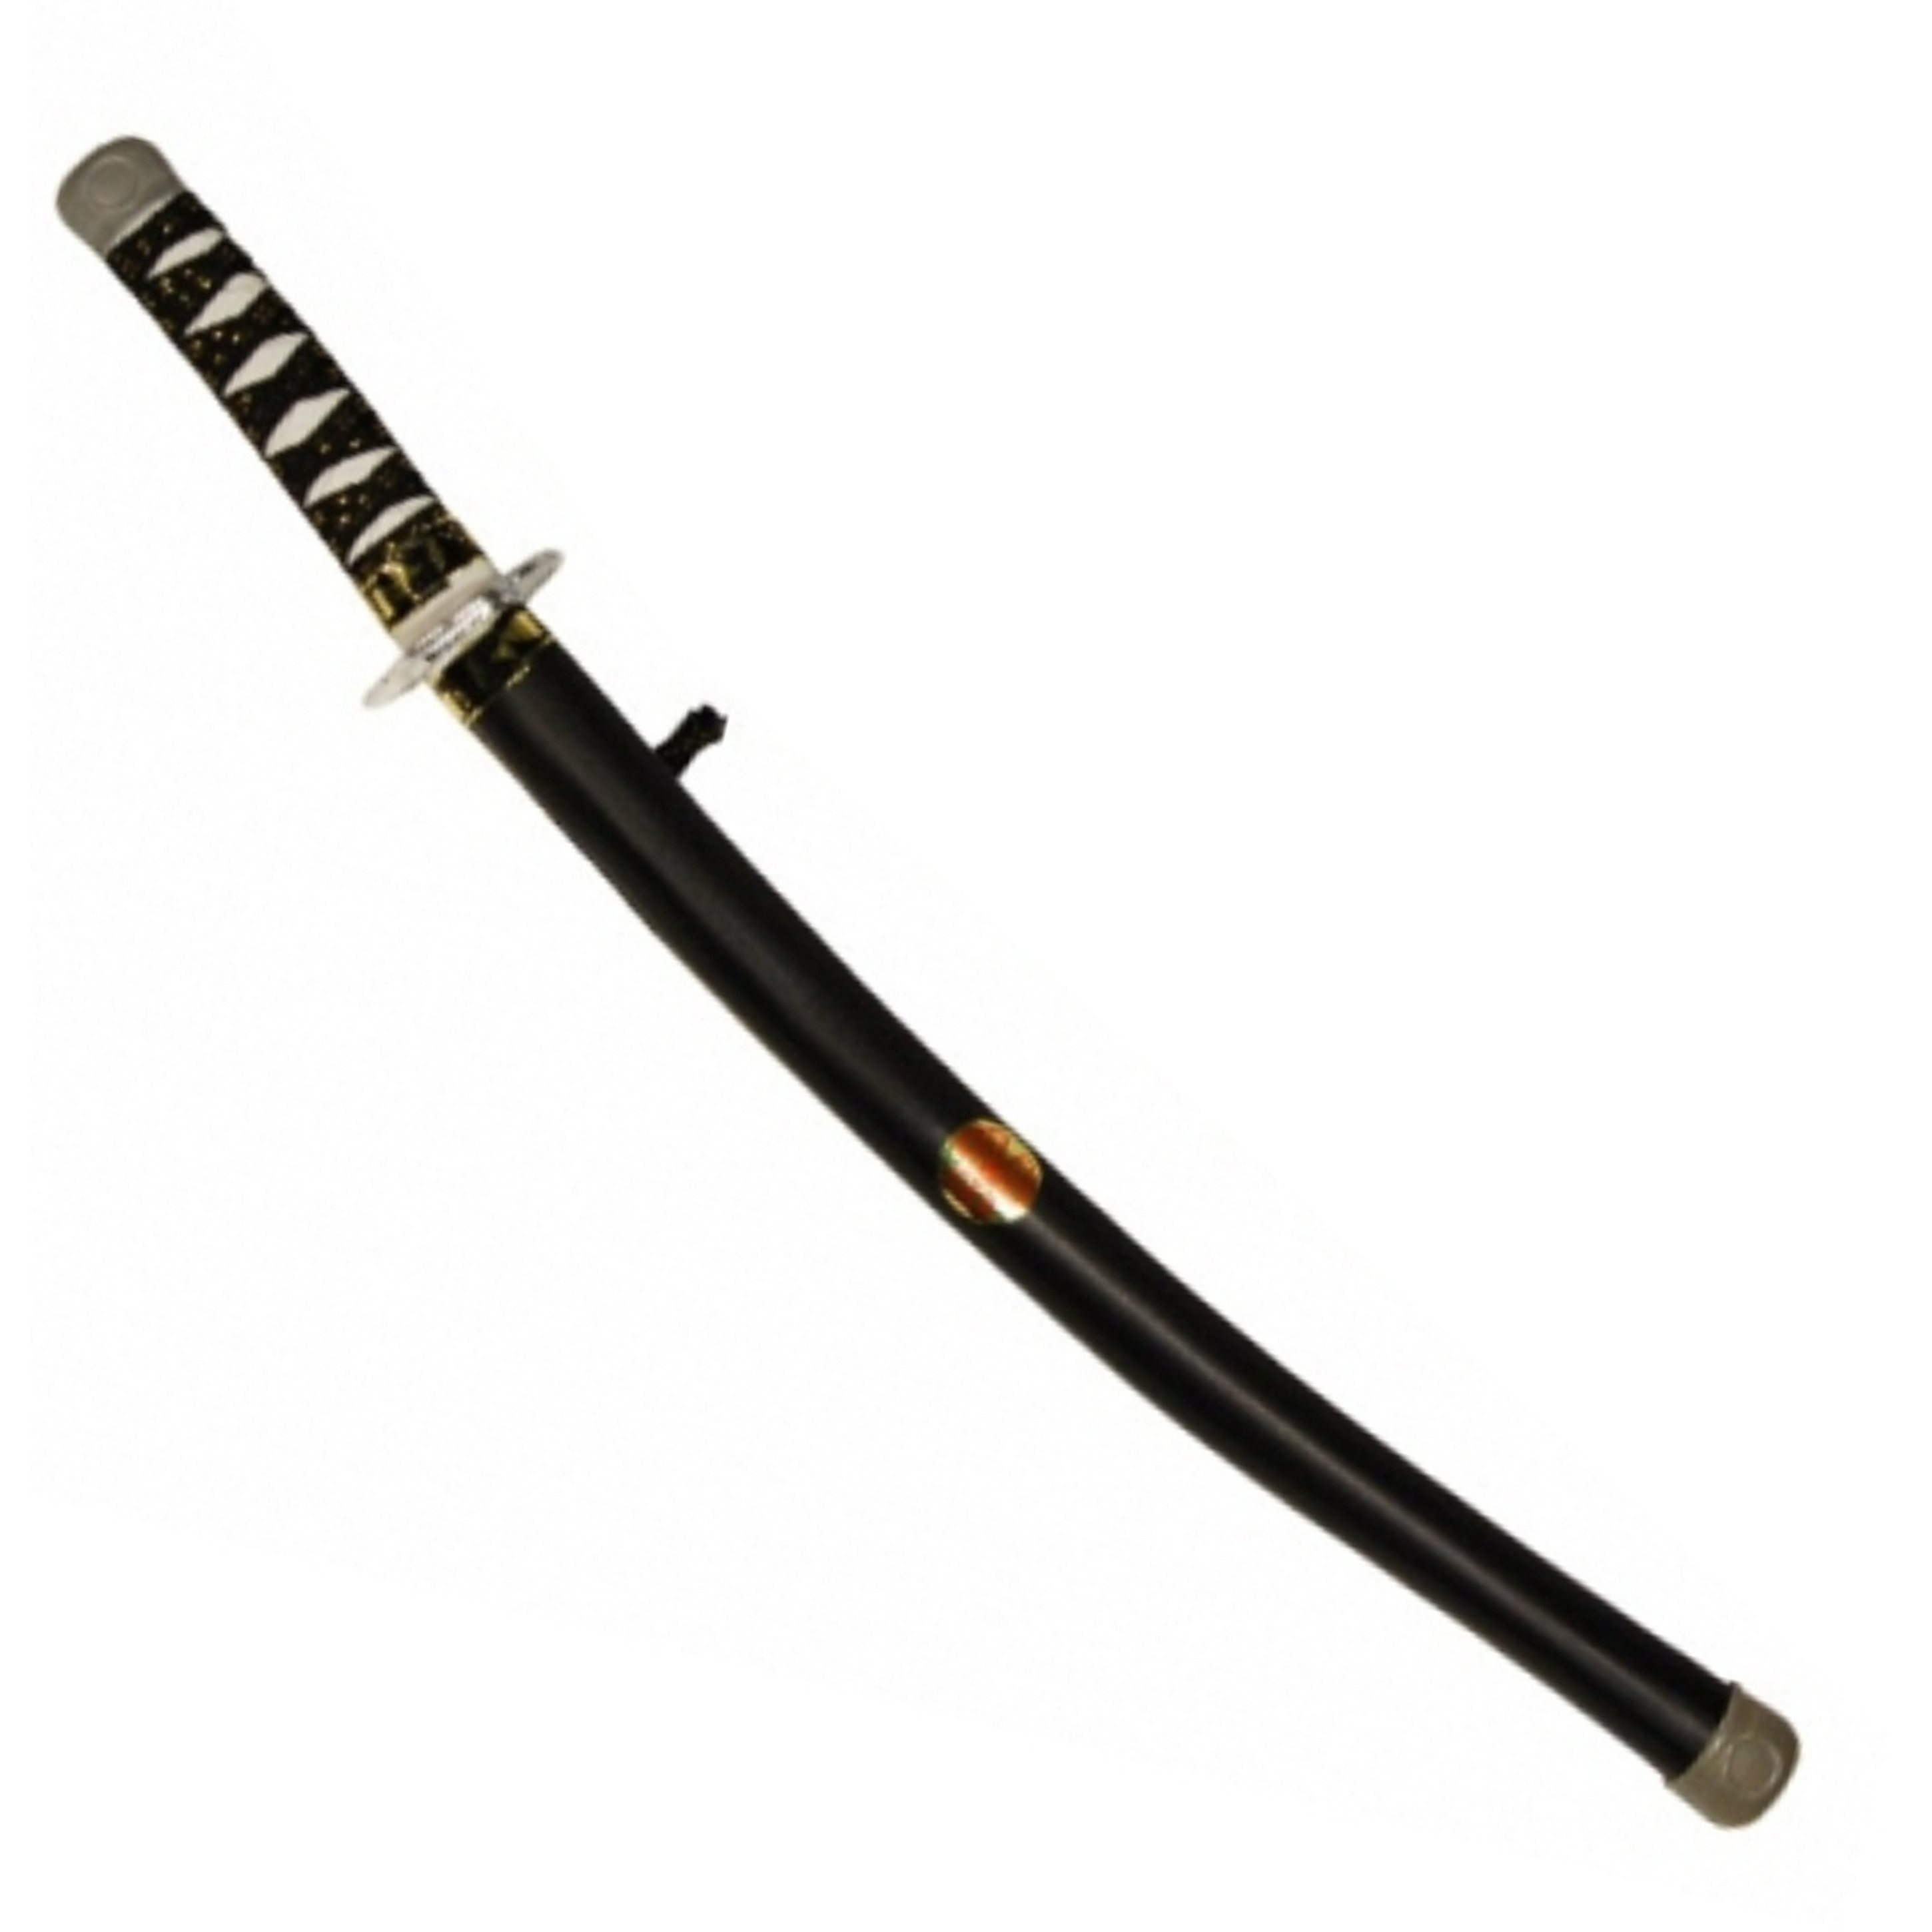 Ninja zwaard in schede zwart